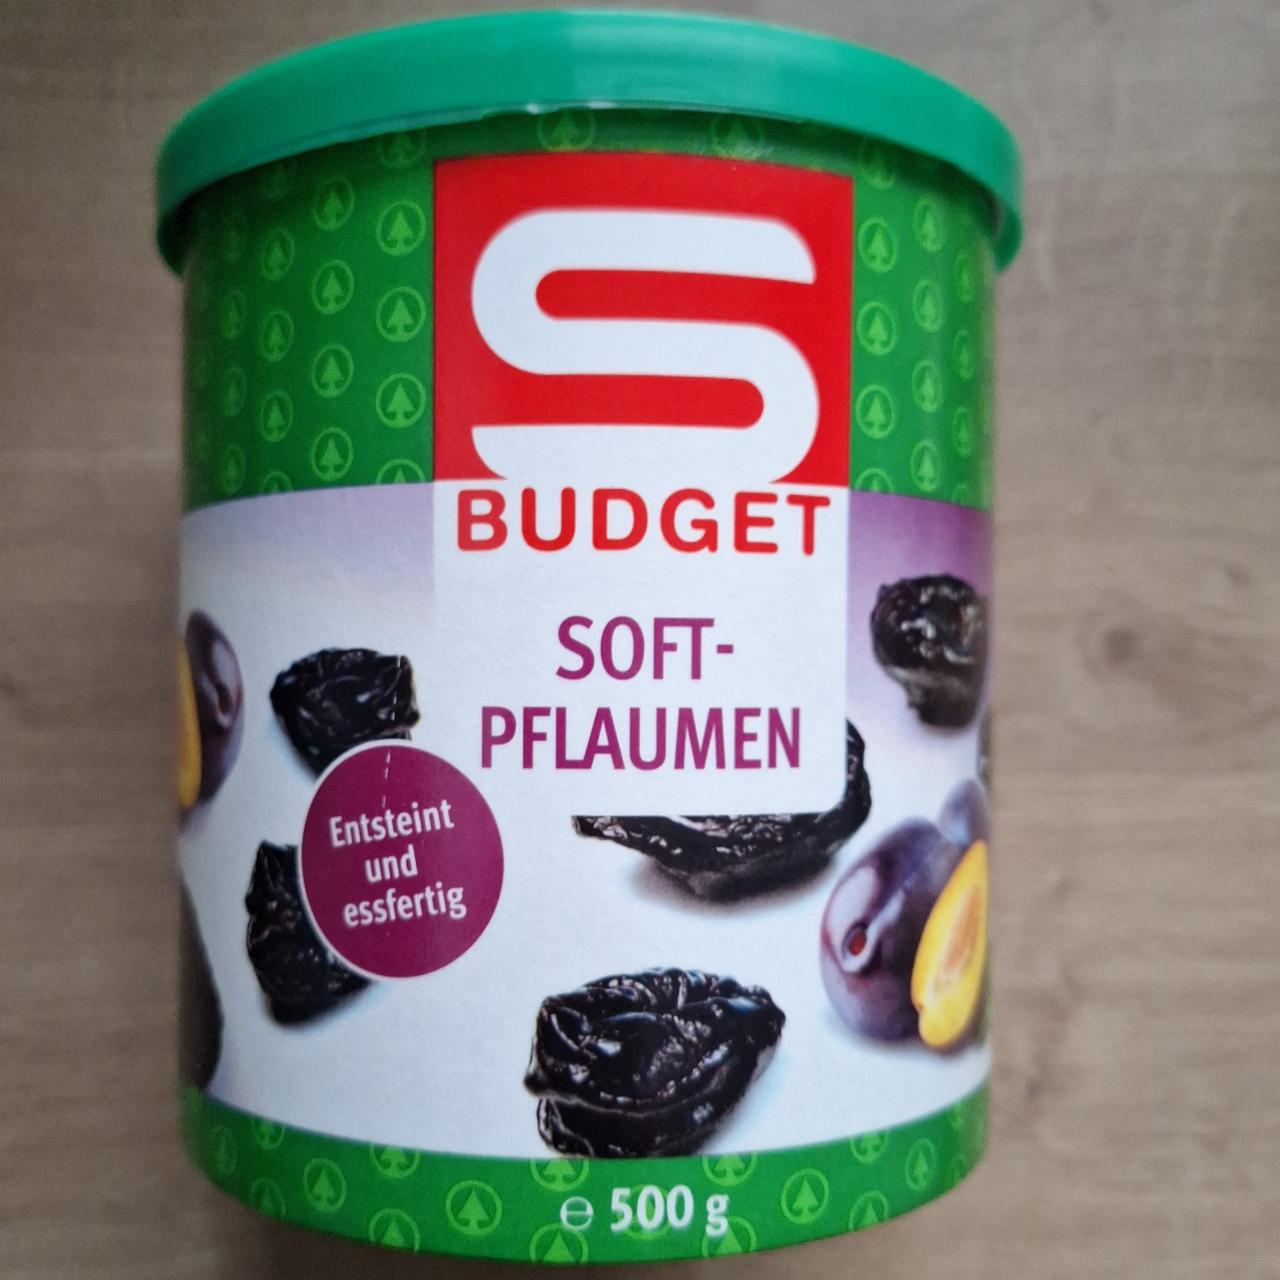 Fotografie - Soft-Pflaumen S Budget